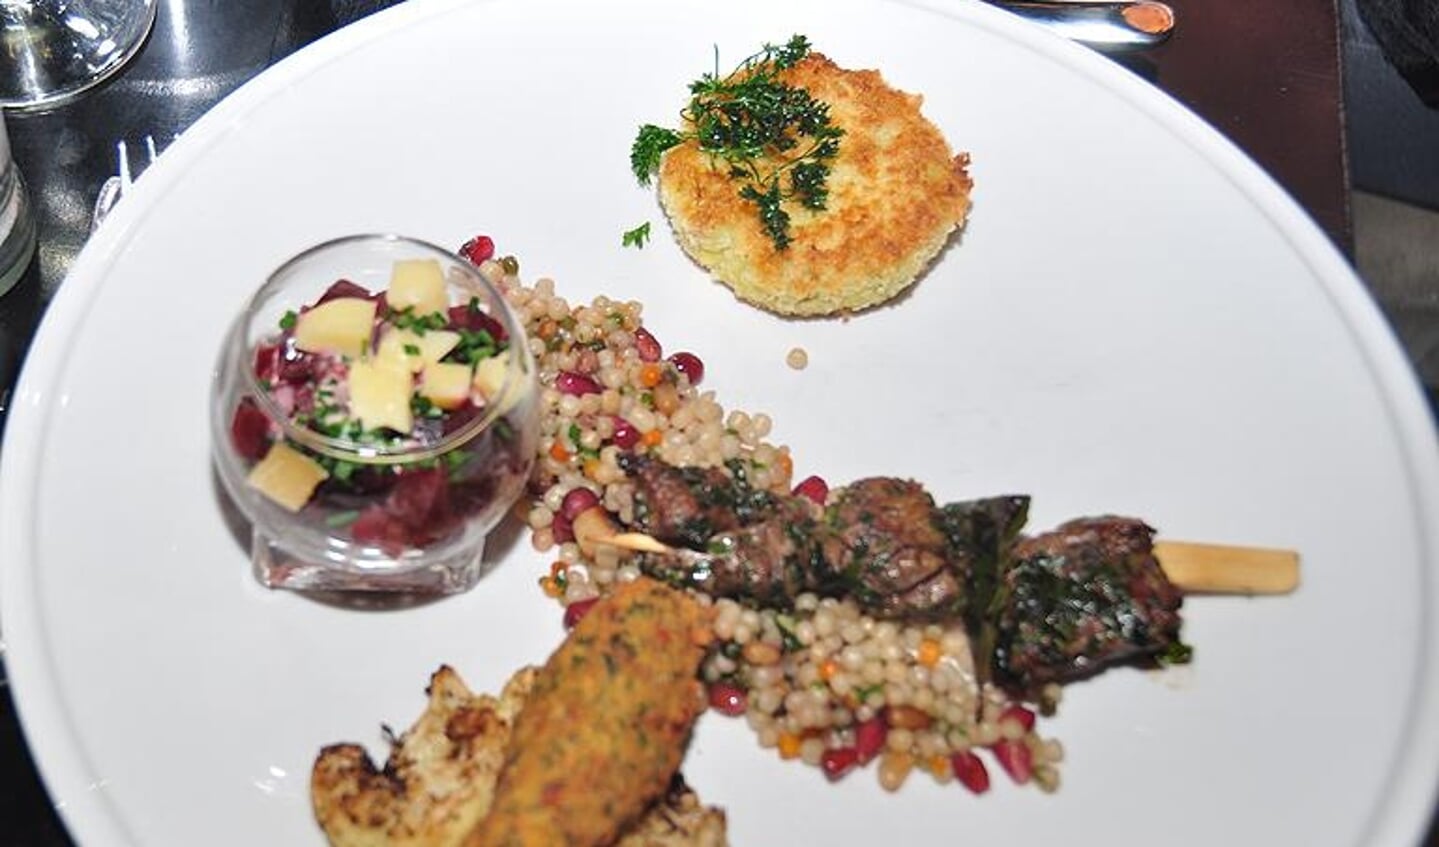 Het hoofdgerecht: lamsspiesjes, couscous, salade van rode biet en gebakken bloemkool. (Foto: Joke Cofino)